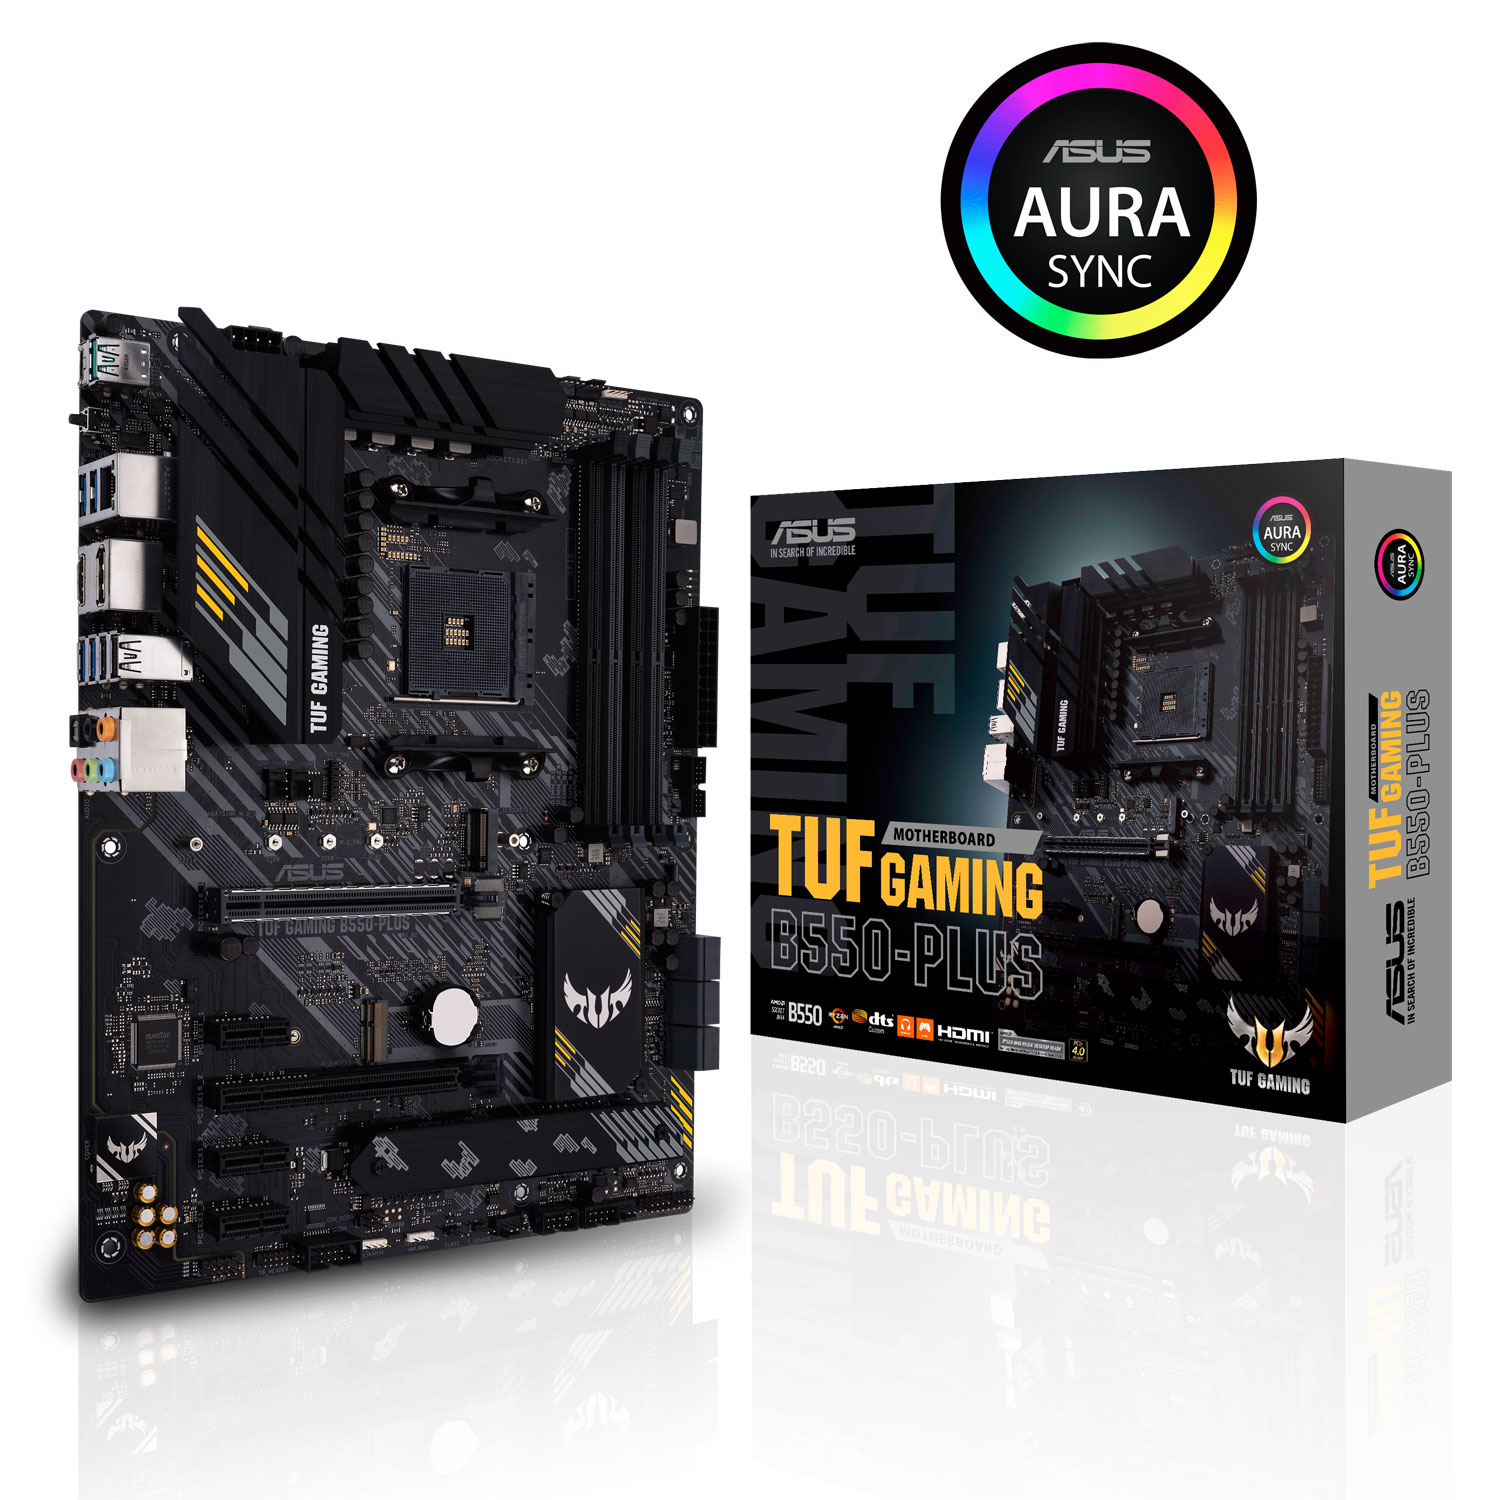 Asus - Asus TUF Gaming B550-Plus (AMD AM4) B550 ATX Motherboard